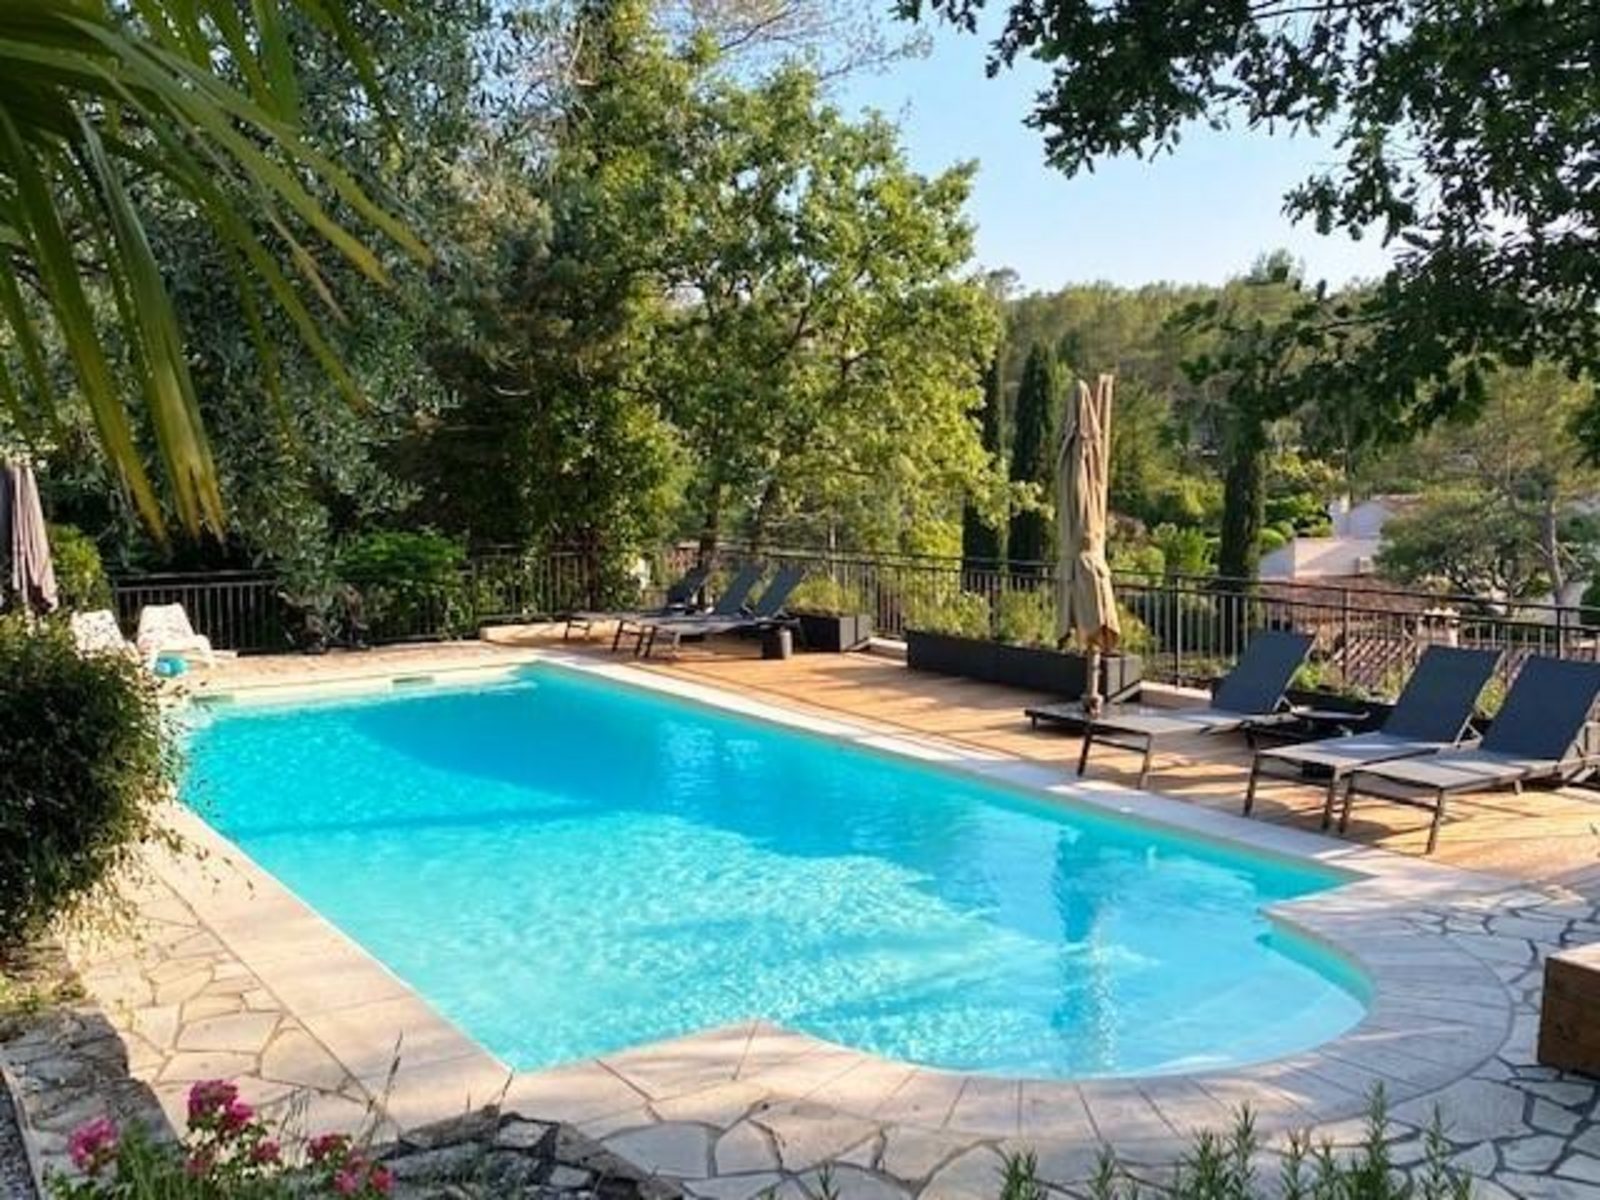 Villa Timo - vakantiehuis met zwembad in Zuid-Frankrijk